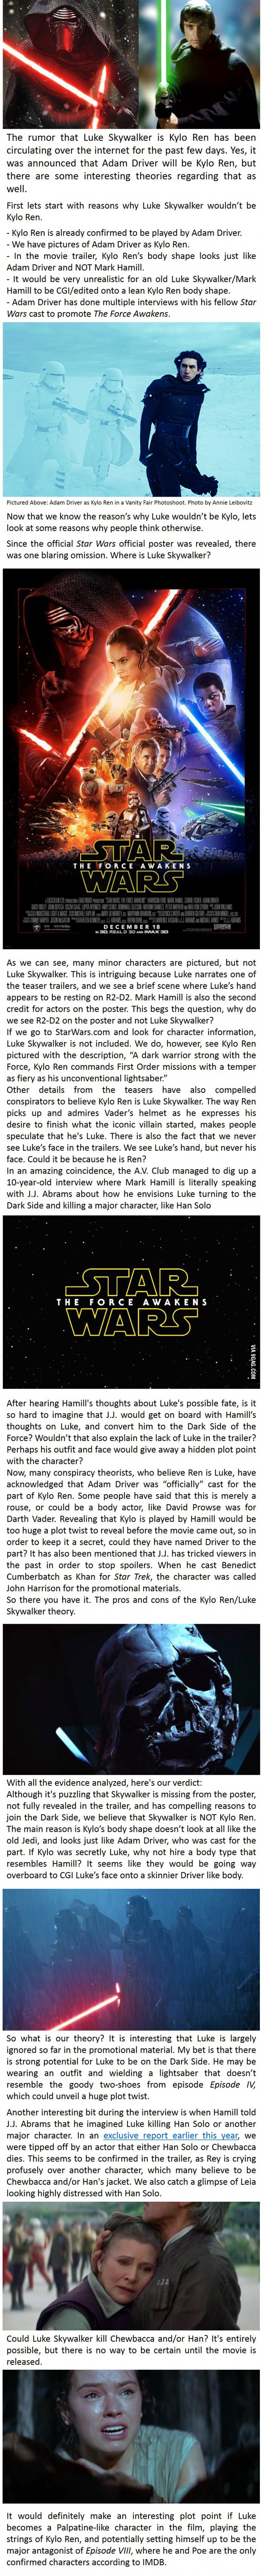 Is Luke Skywalker Kylo Ren in Star Wars: The Force Awakens?